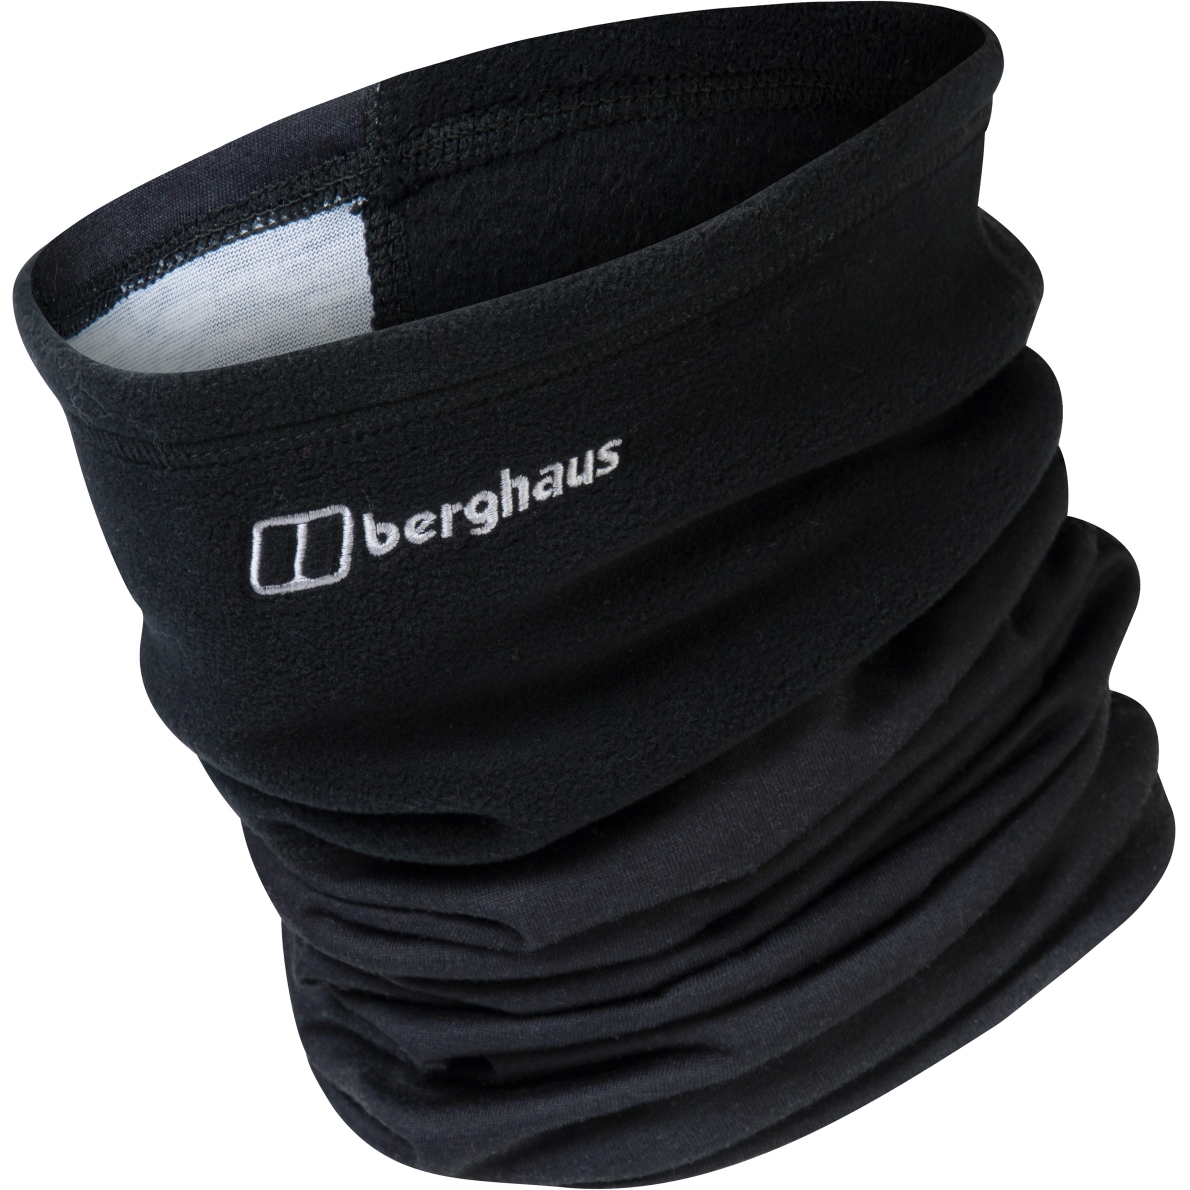 Berghaus Durable Trail Leggings Women - Jet Black